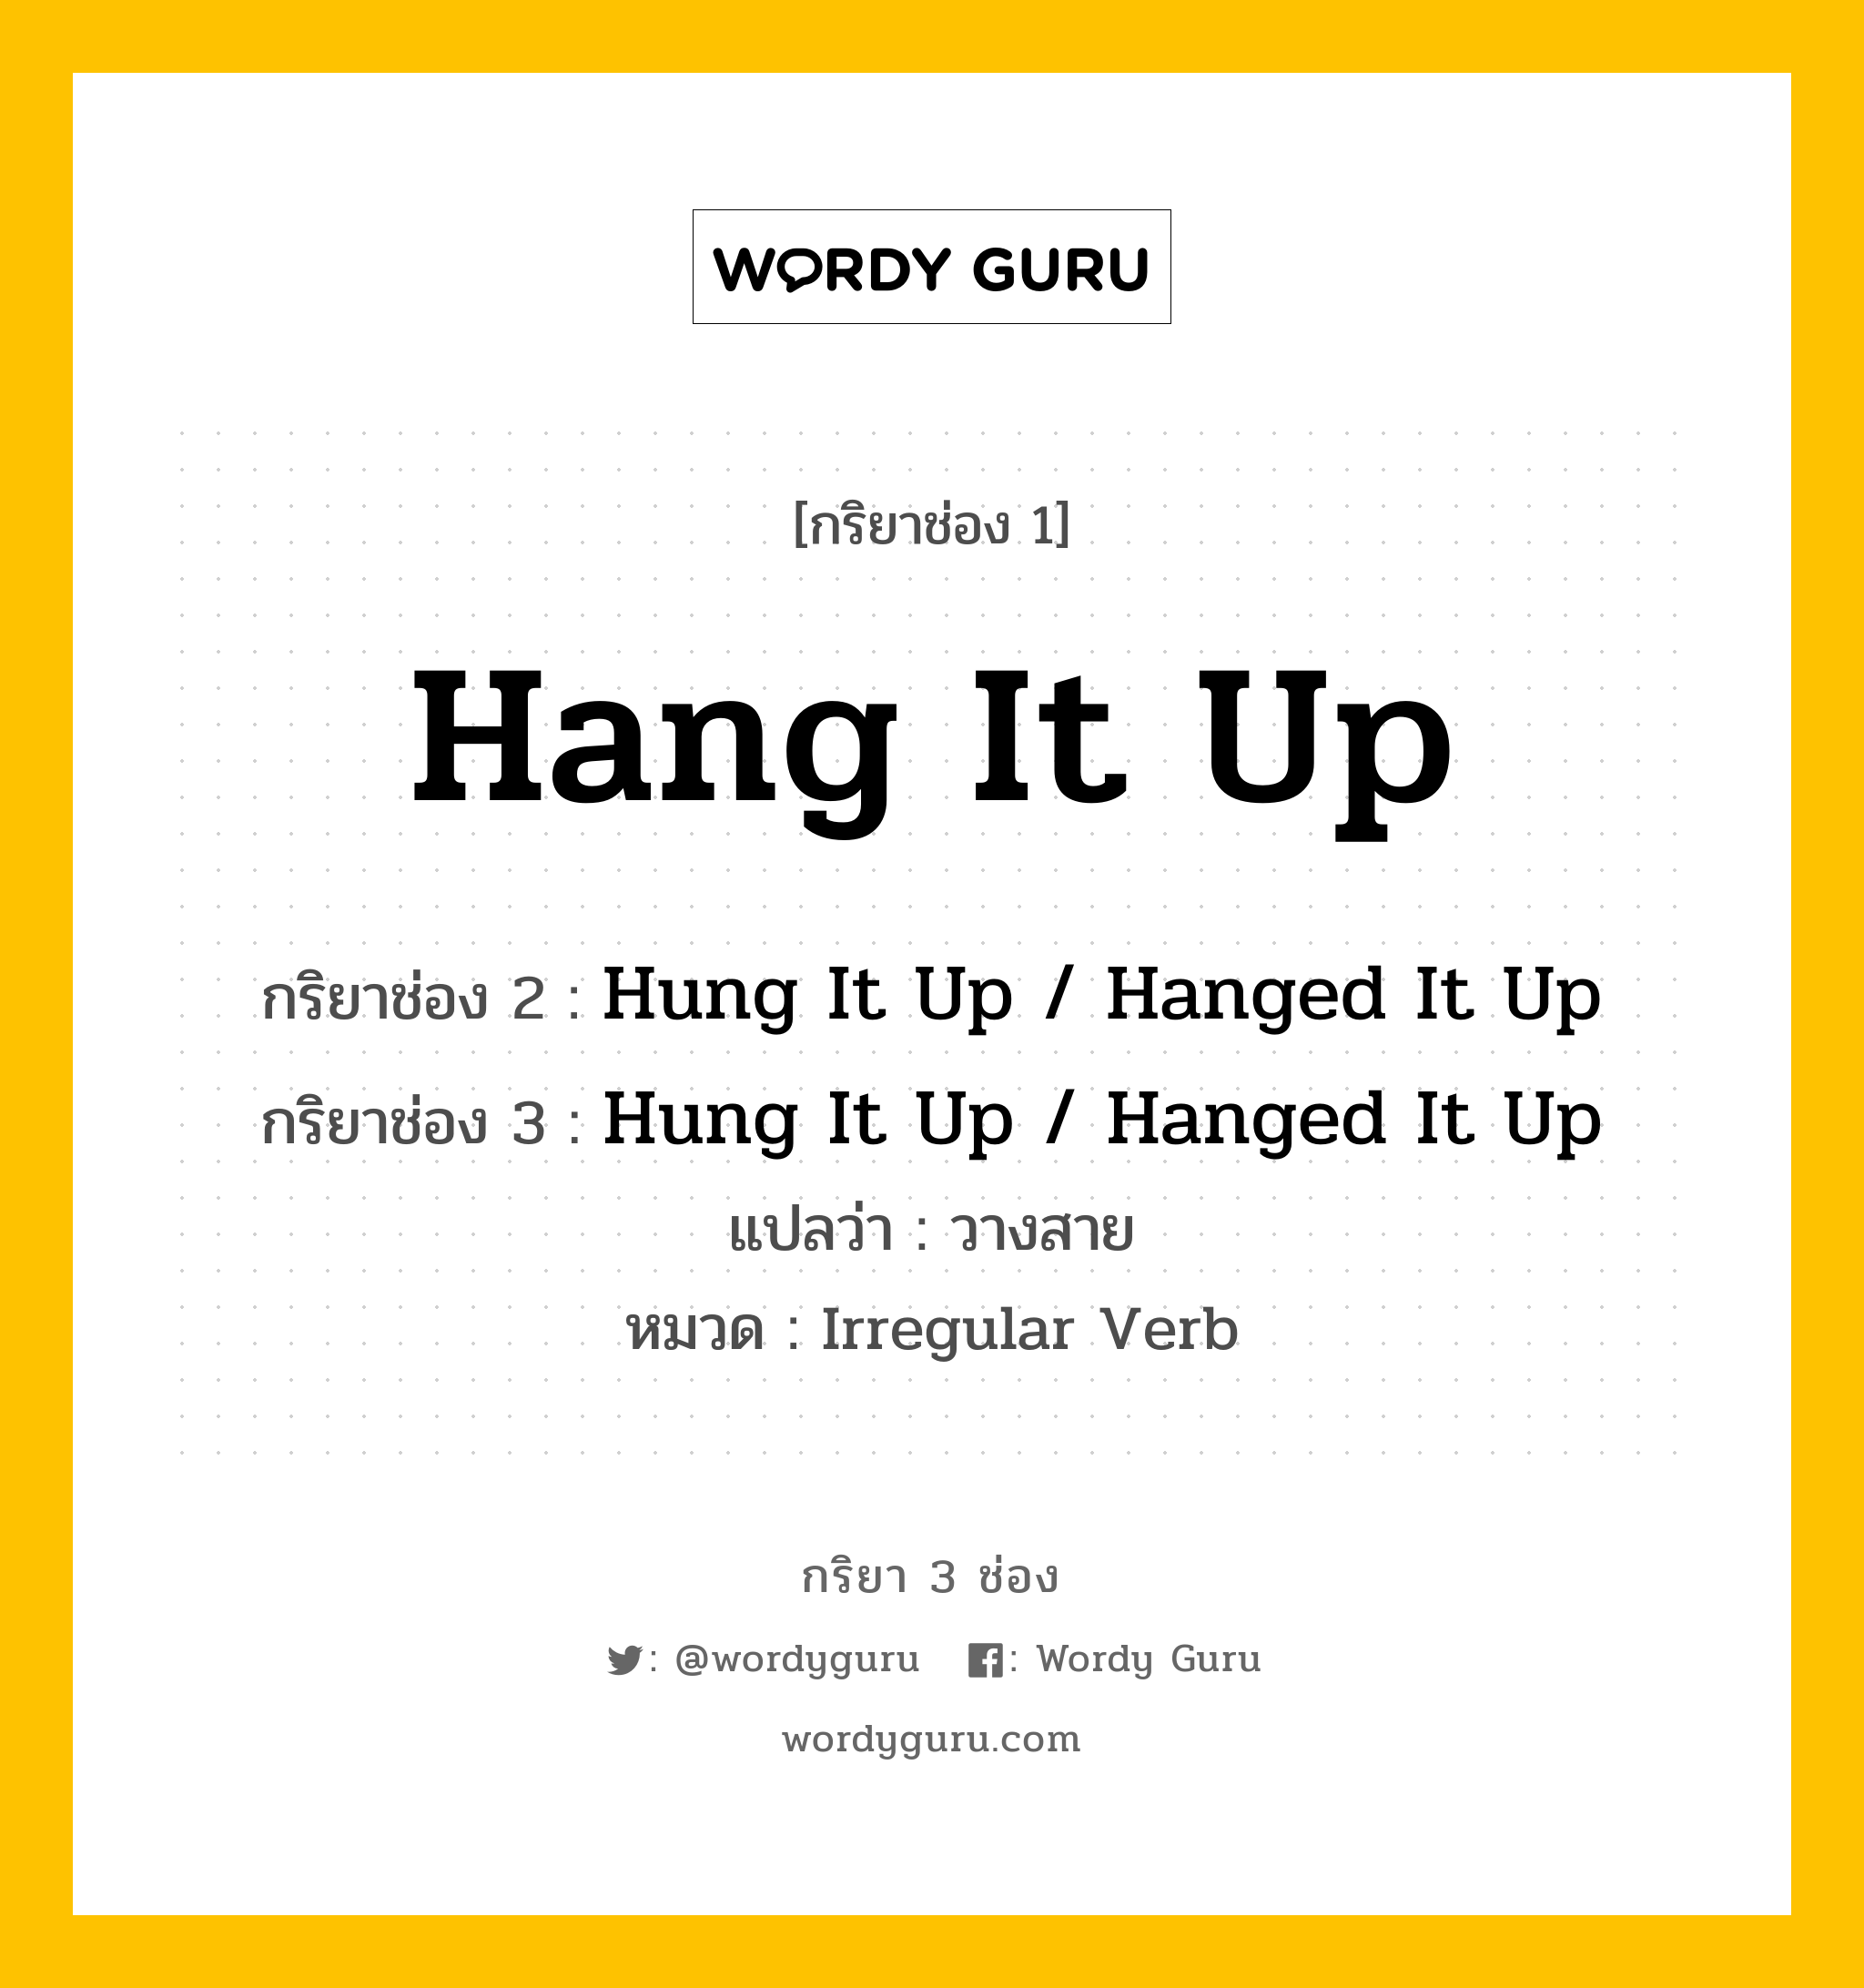 กริยา 3 ช่อง: Hang It Up ช่อง 2 Hang It Up ช่อง 3 คืออะไร, กริยาช่อง 1 Hang It Up กริยาช่อง 2 Hung It Up / Hanged It Up กริยาช่อง 3 Hung It Up / Hanged It Up แปลว่า วางสาย หมวด Irregular Verb หมวด Irregular Verb